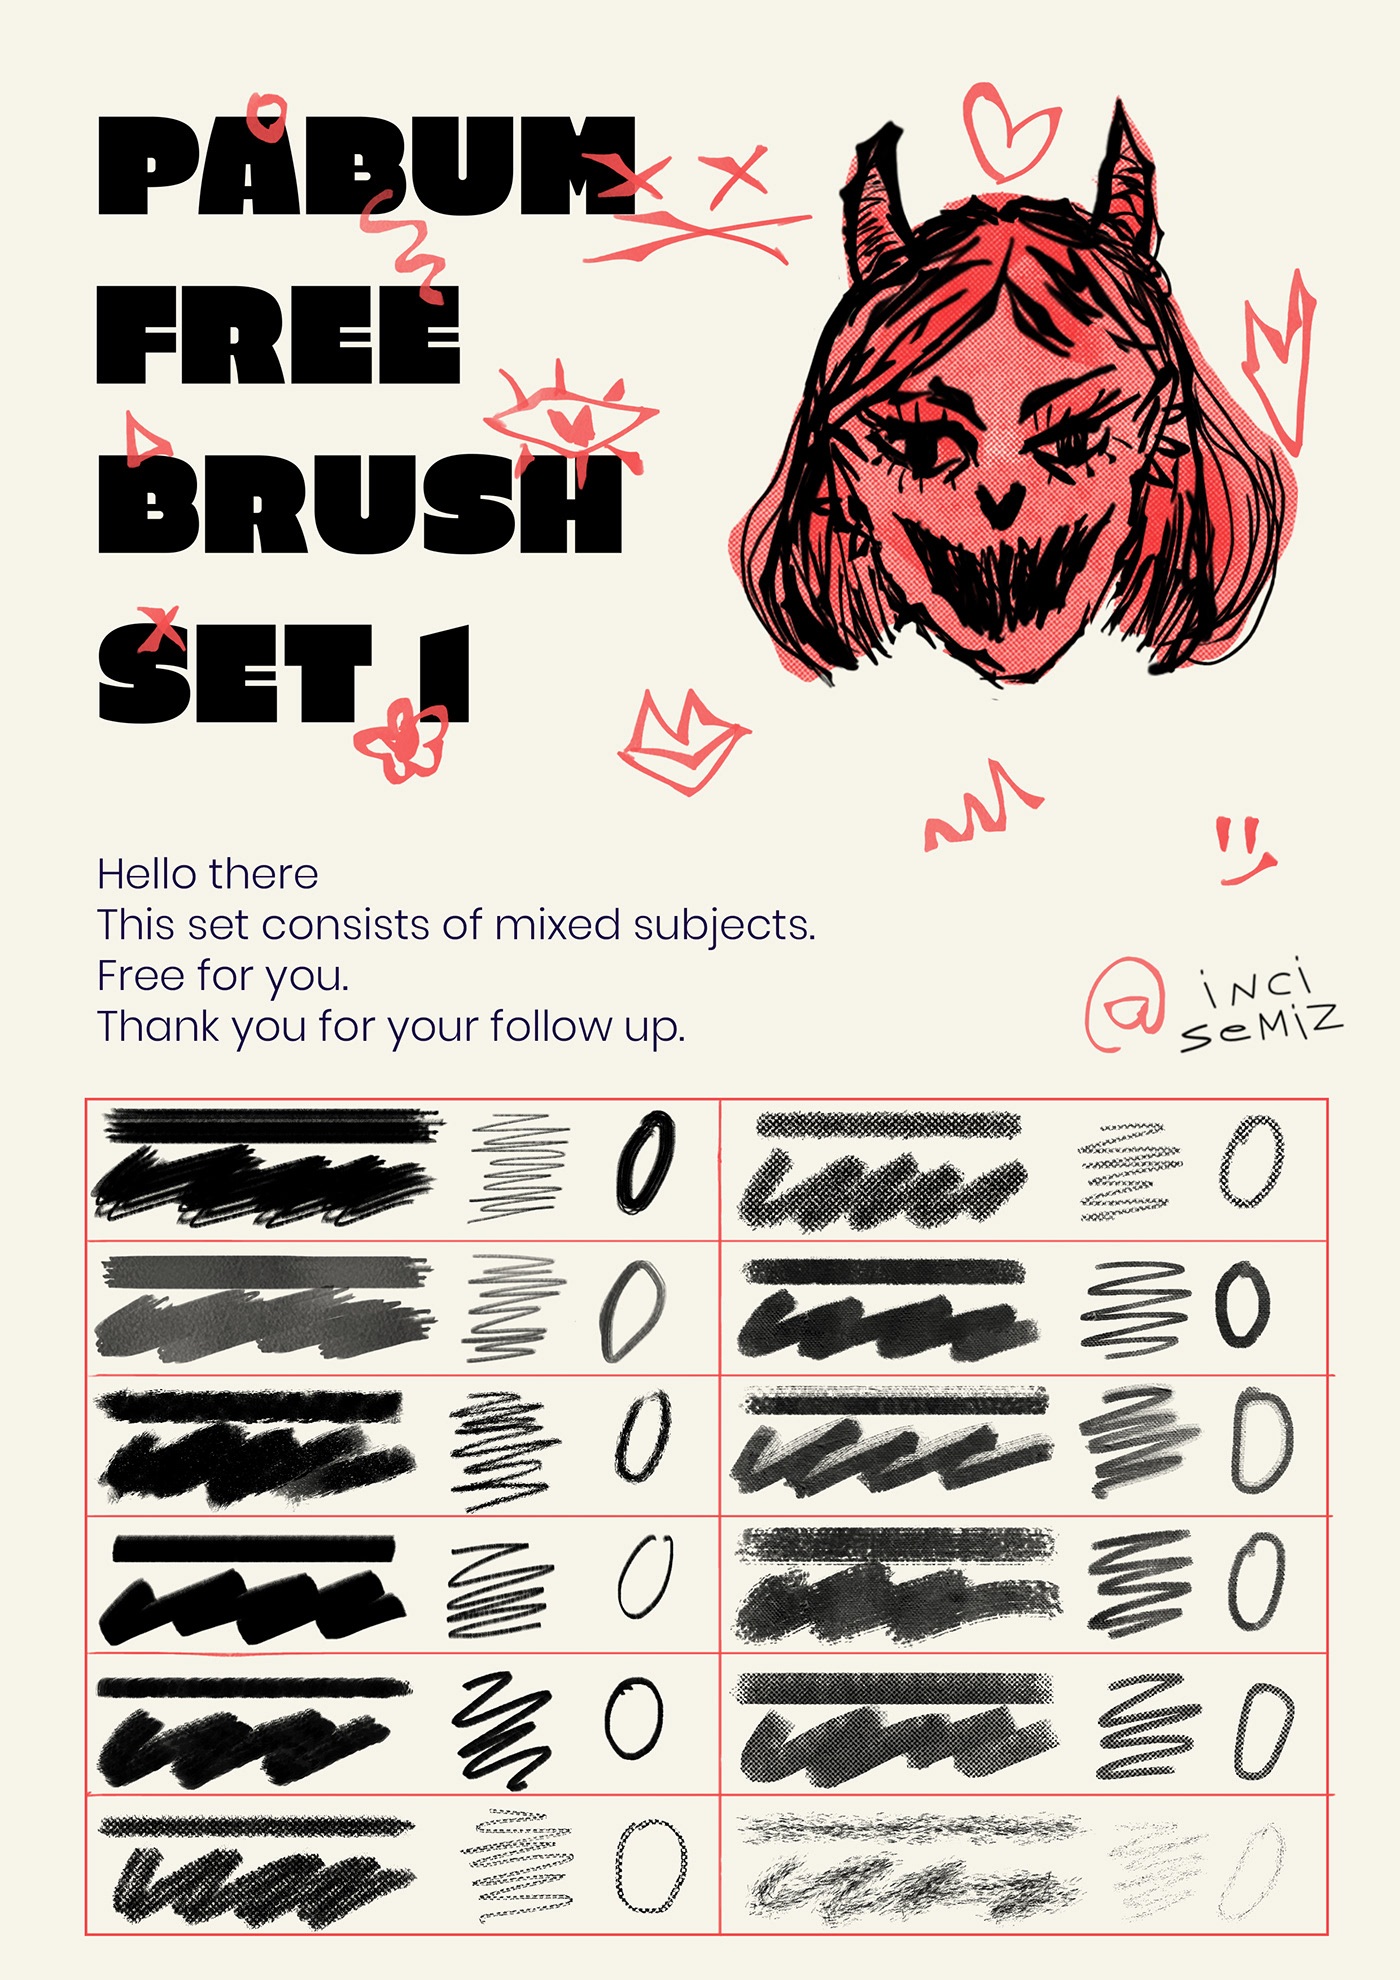 brushes free Free Brush Pack Free Brush Set freebie Photoshop brushes